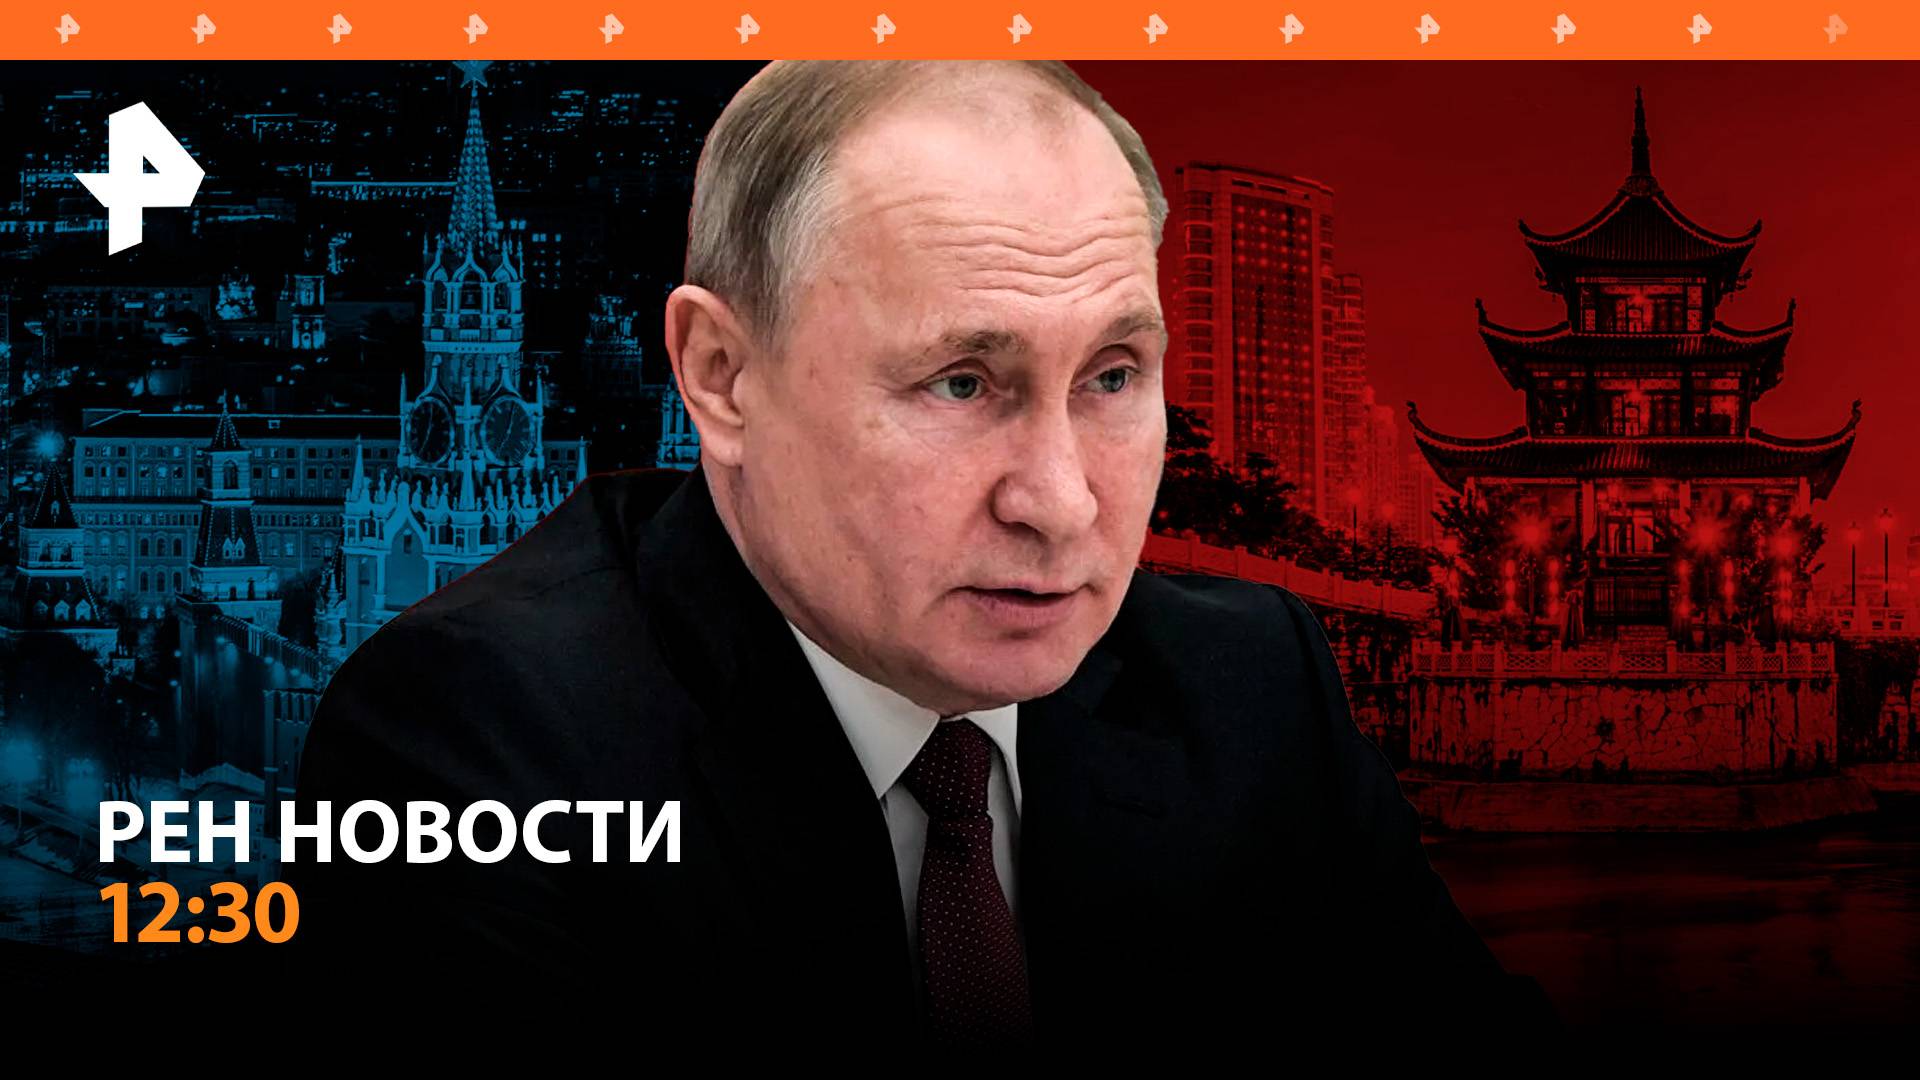 Визит Путина в Китай / Фицо знал о нападении / Сколько стоит последний звонок / РЕН Новости 12:30